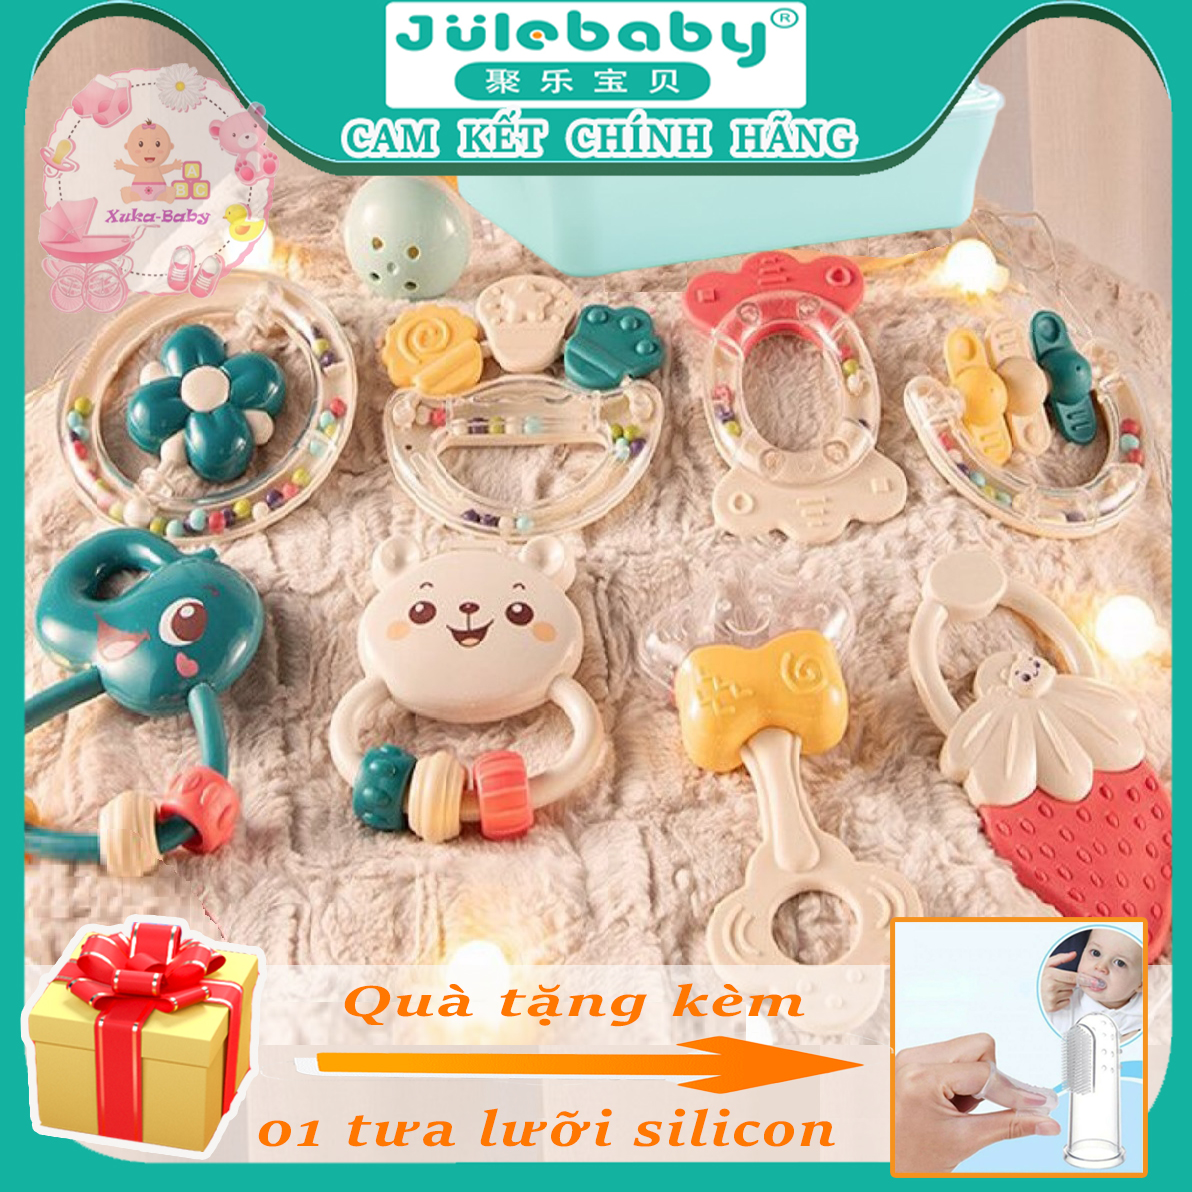 Xúc xắc gặm nướu đồ chơi trẻ sơ sinh JULEBABY chính hãng cao cấp 9 món